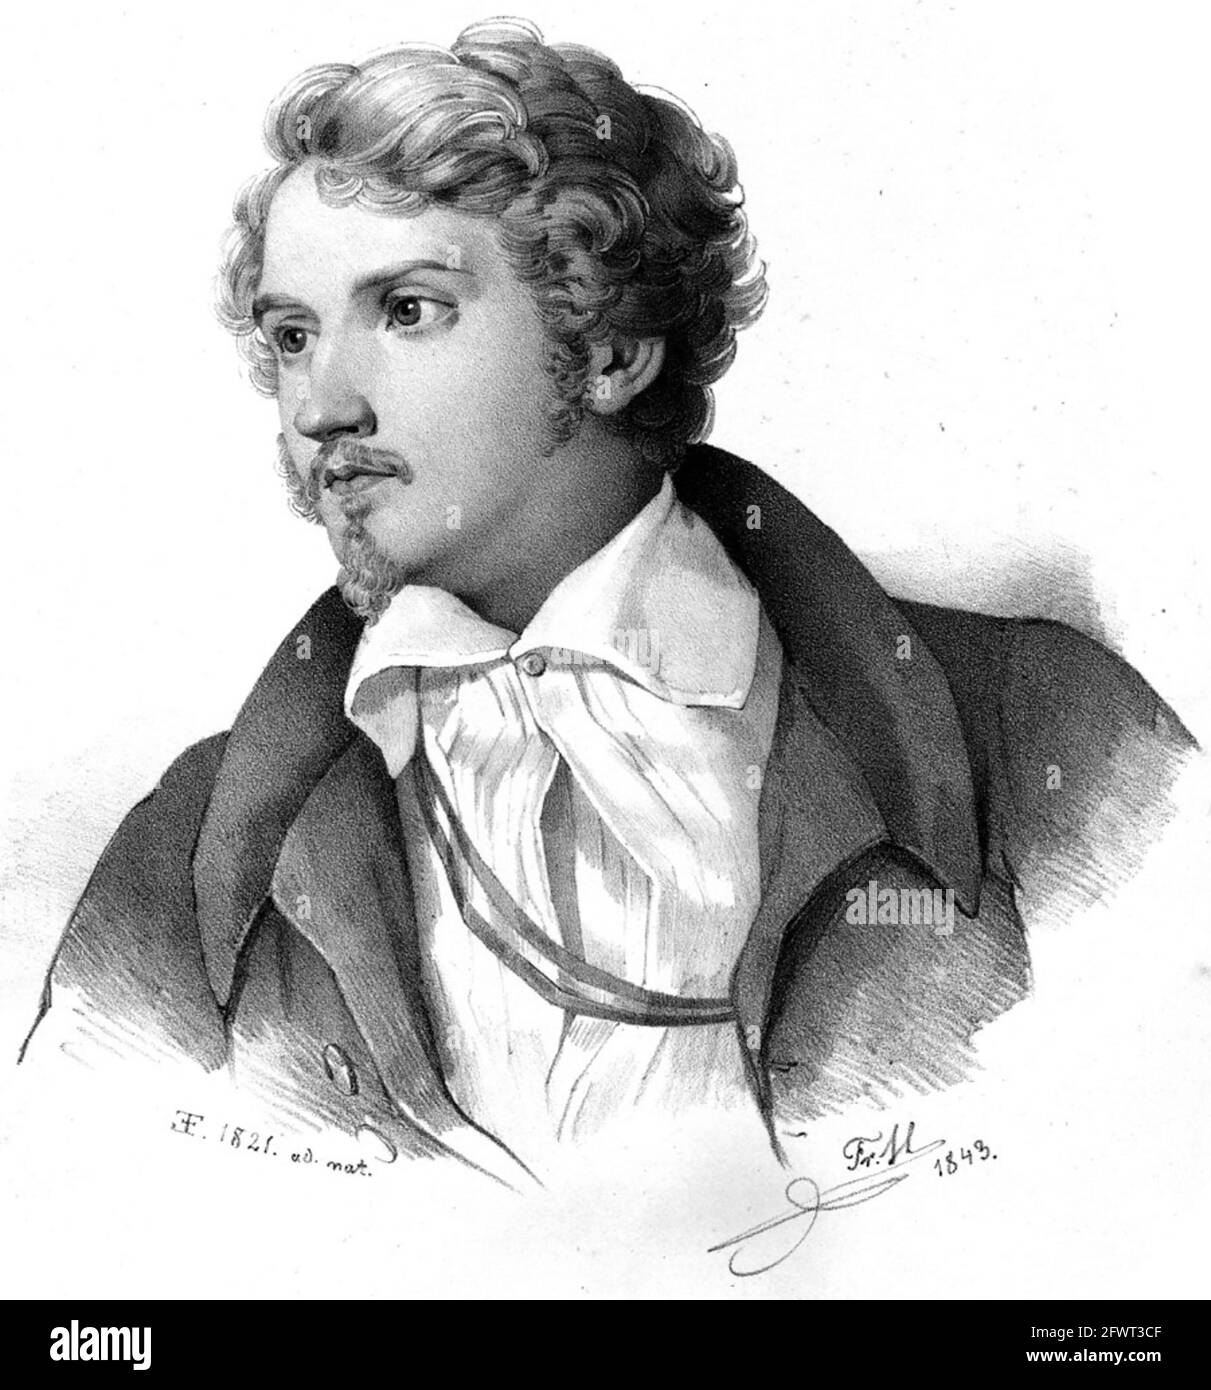 JUTUS von LIEBIG (1803-1873) scientifique allemand et l'un des fondateurs de la chimie organique. Une lithographie de 1843 d'une peinture de 1821. Banque D'Images